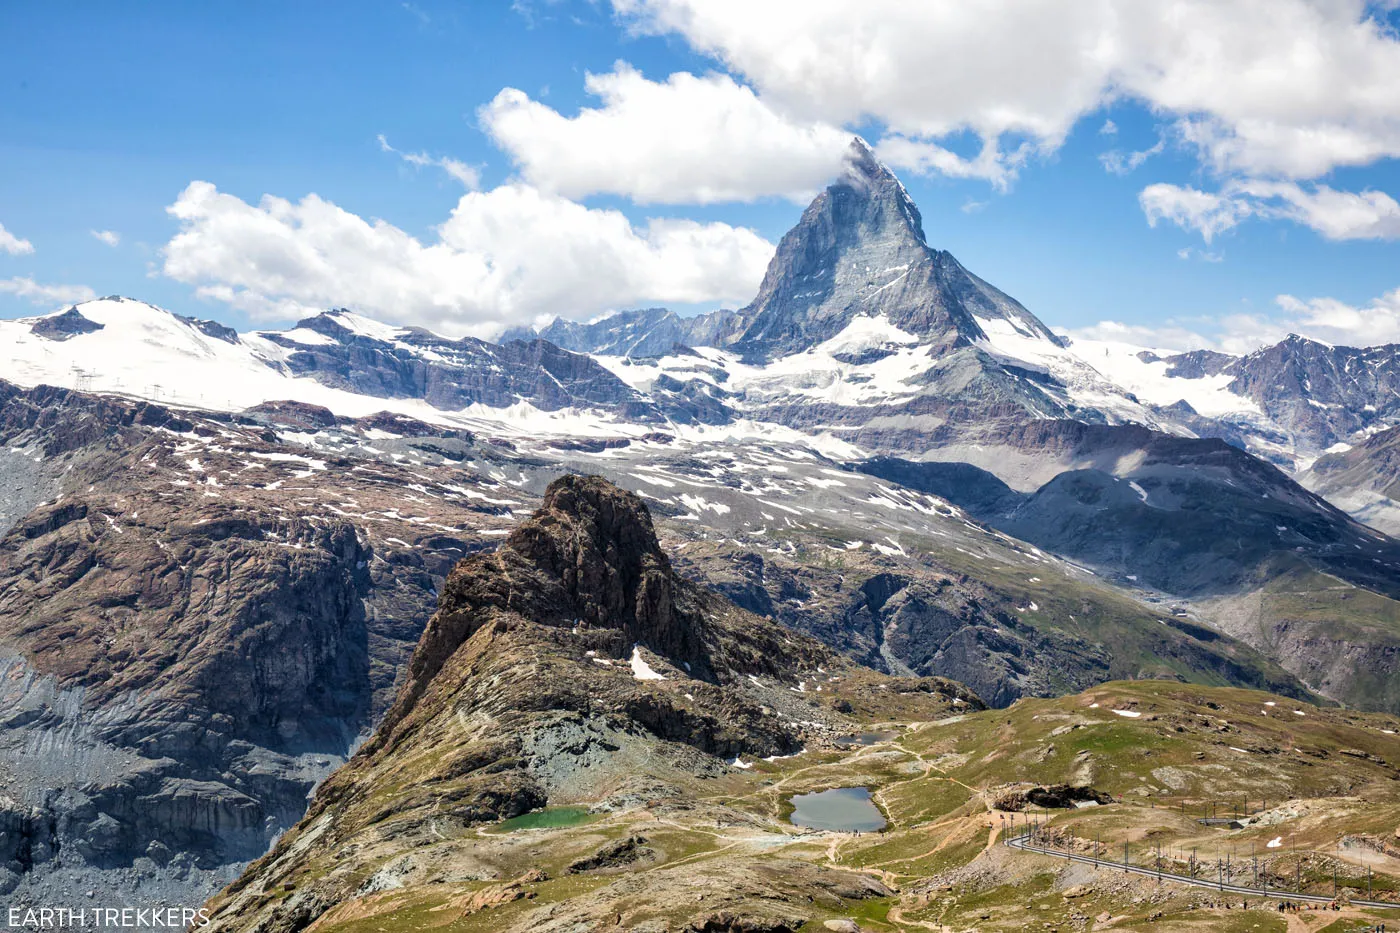 Best View of the Matterhorn